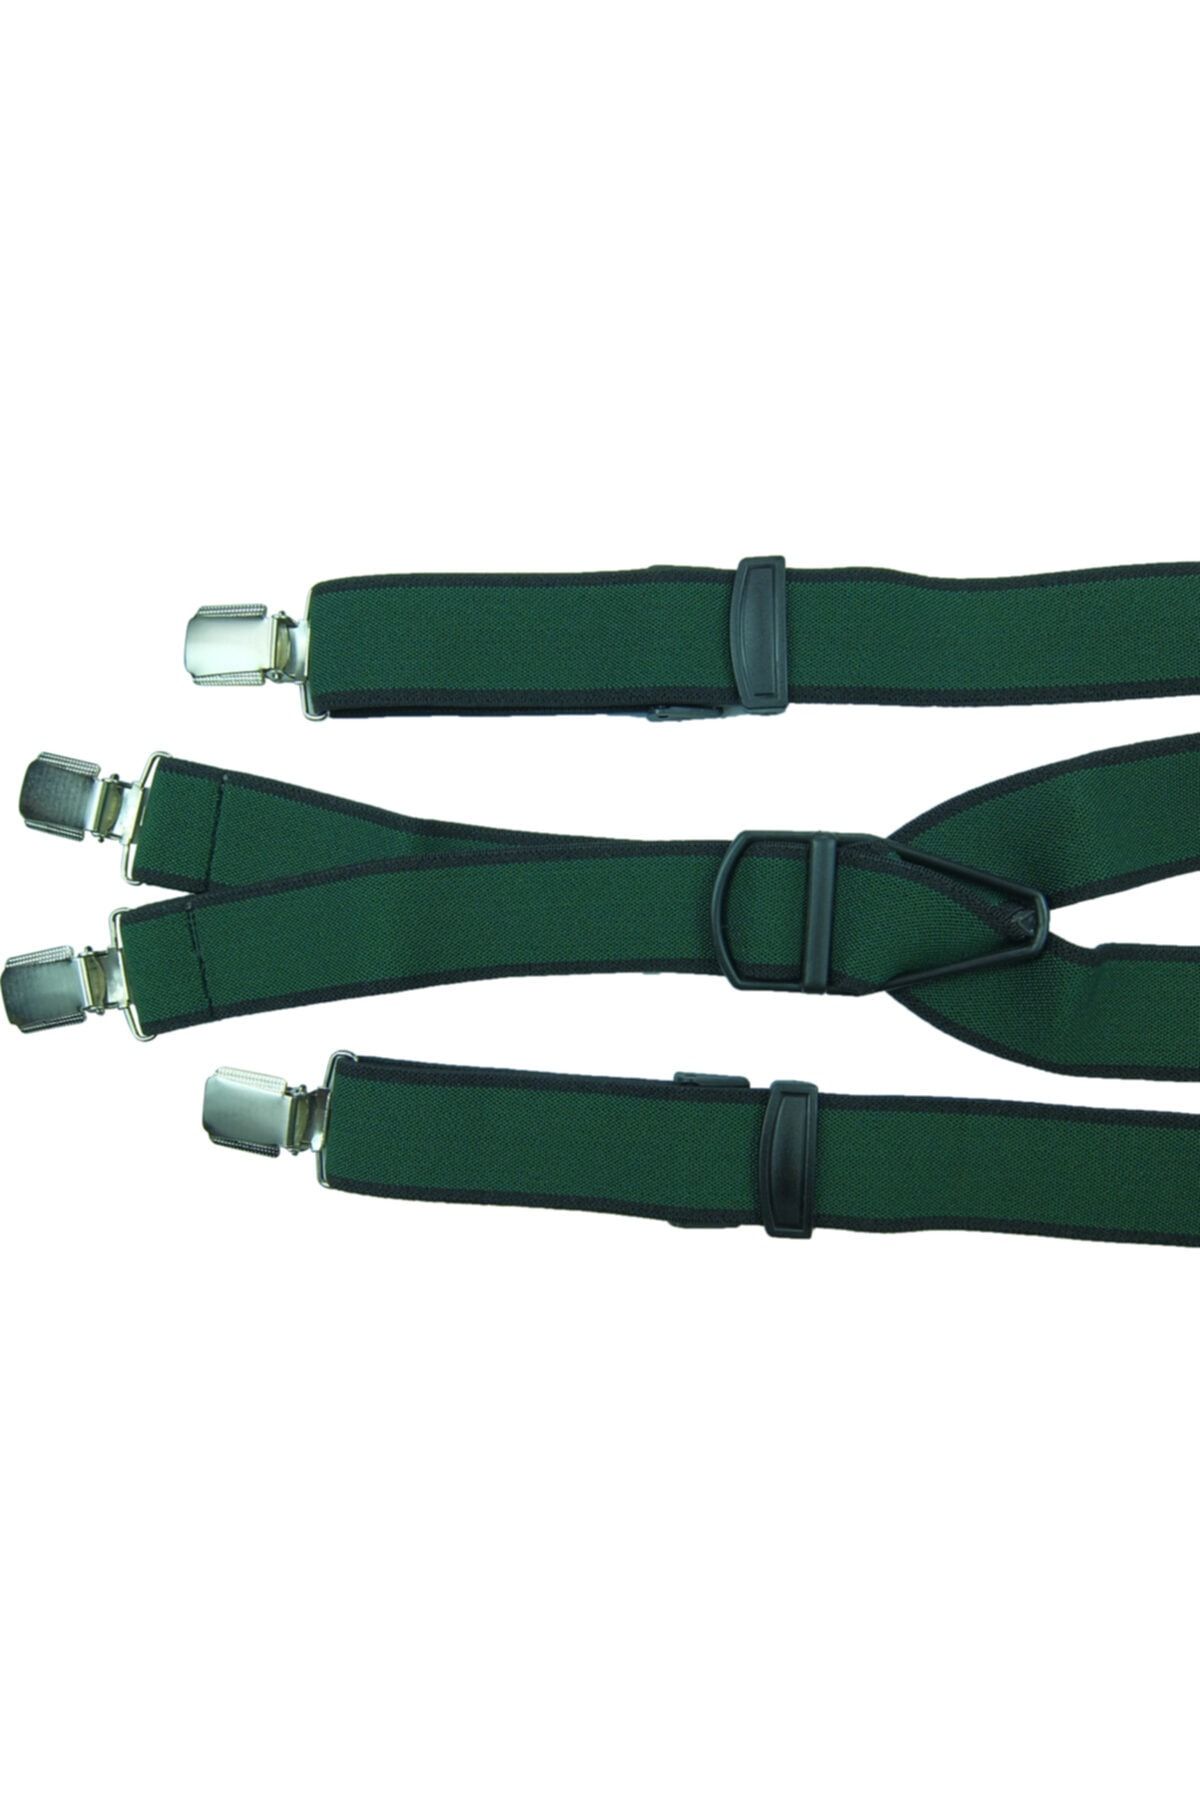 KemerSepeti Yeşil Renkli Dört Klipsli Pantolon Askısı